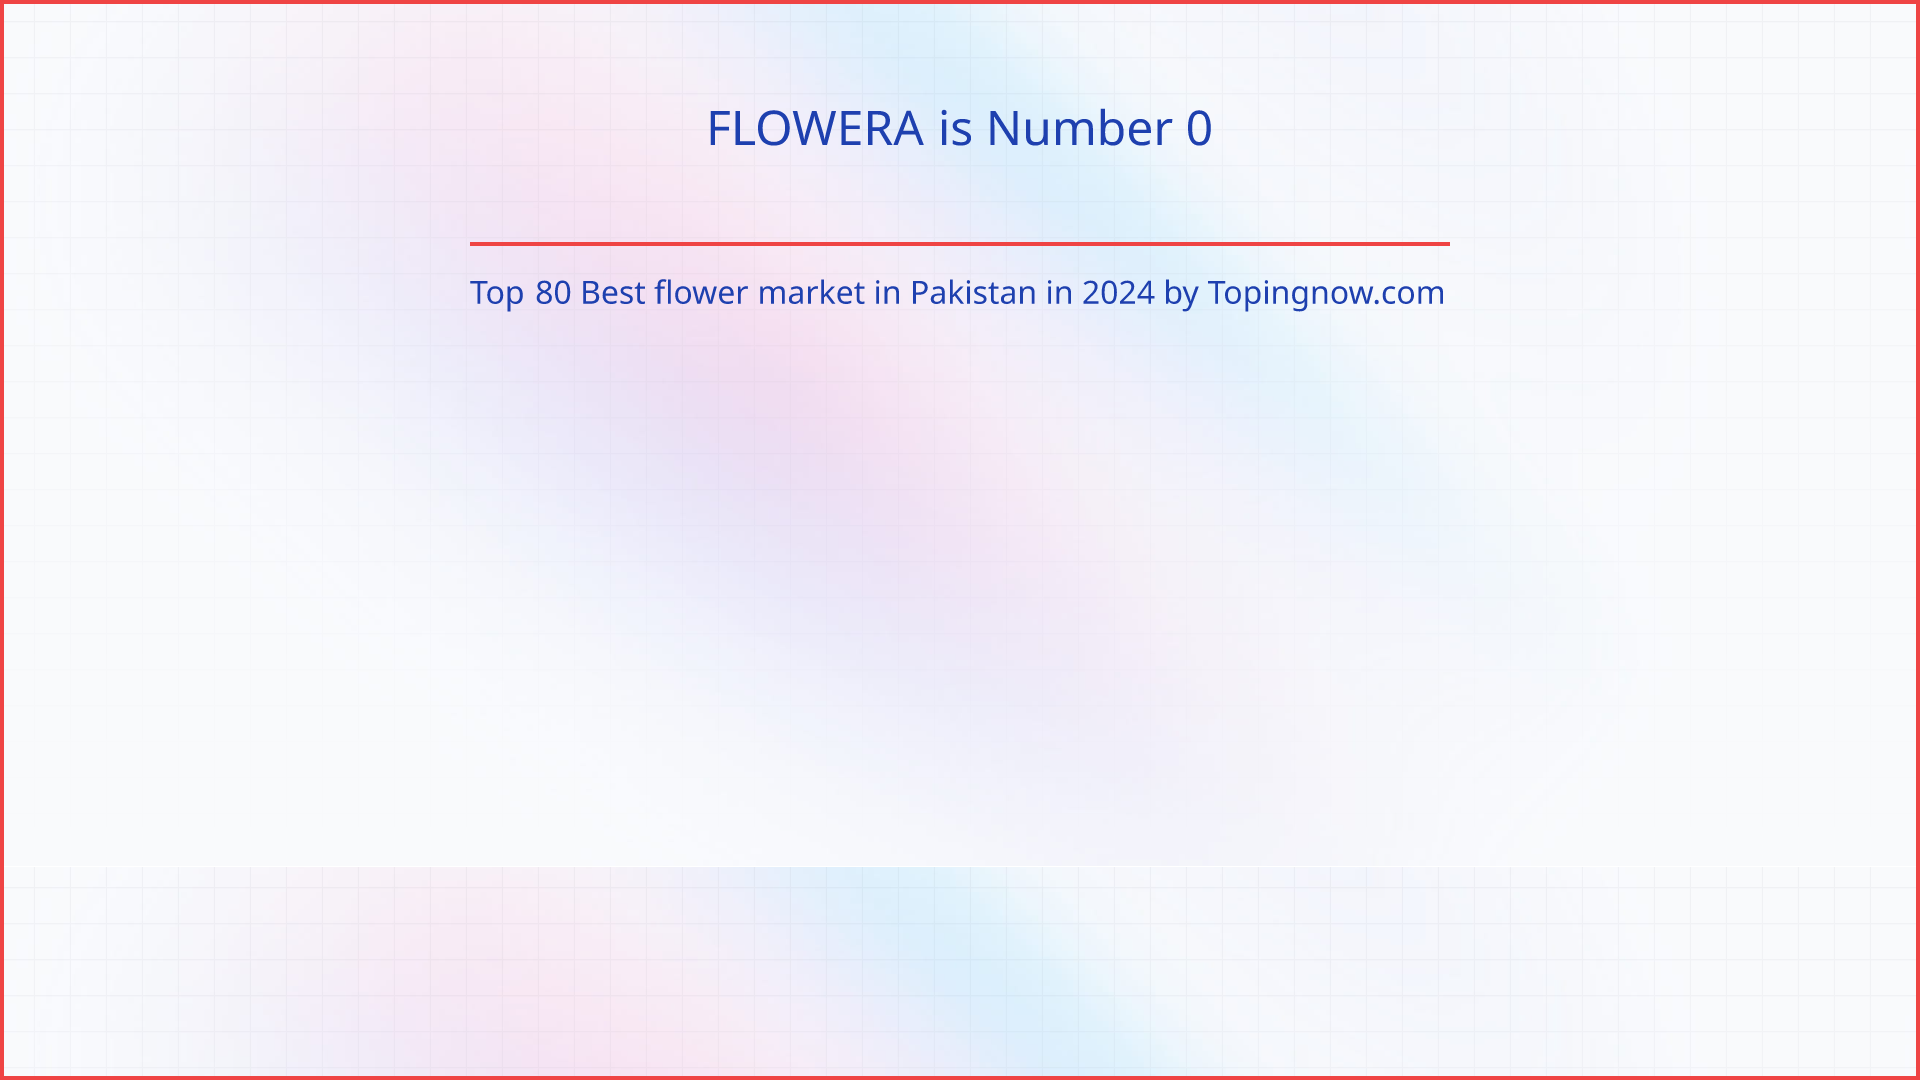 FLOWERA: Top 80 Best flower market in Pakistan in 2024